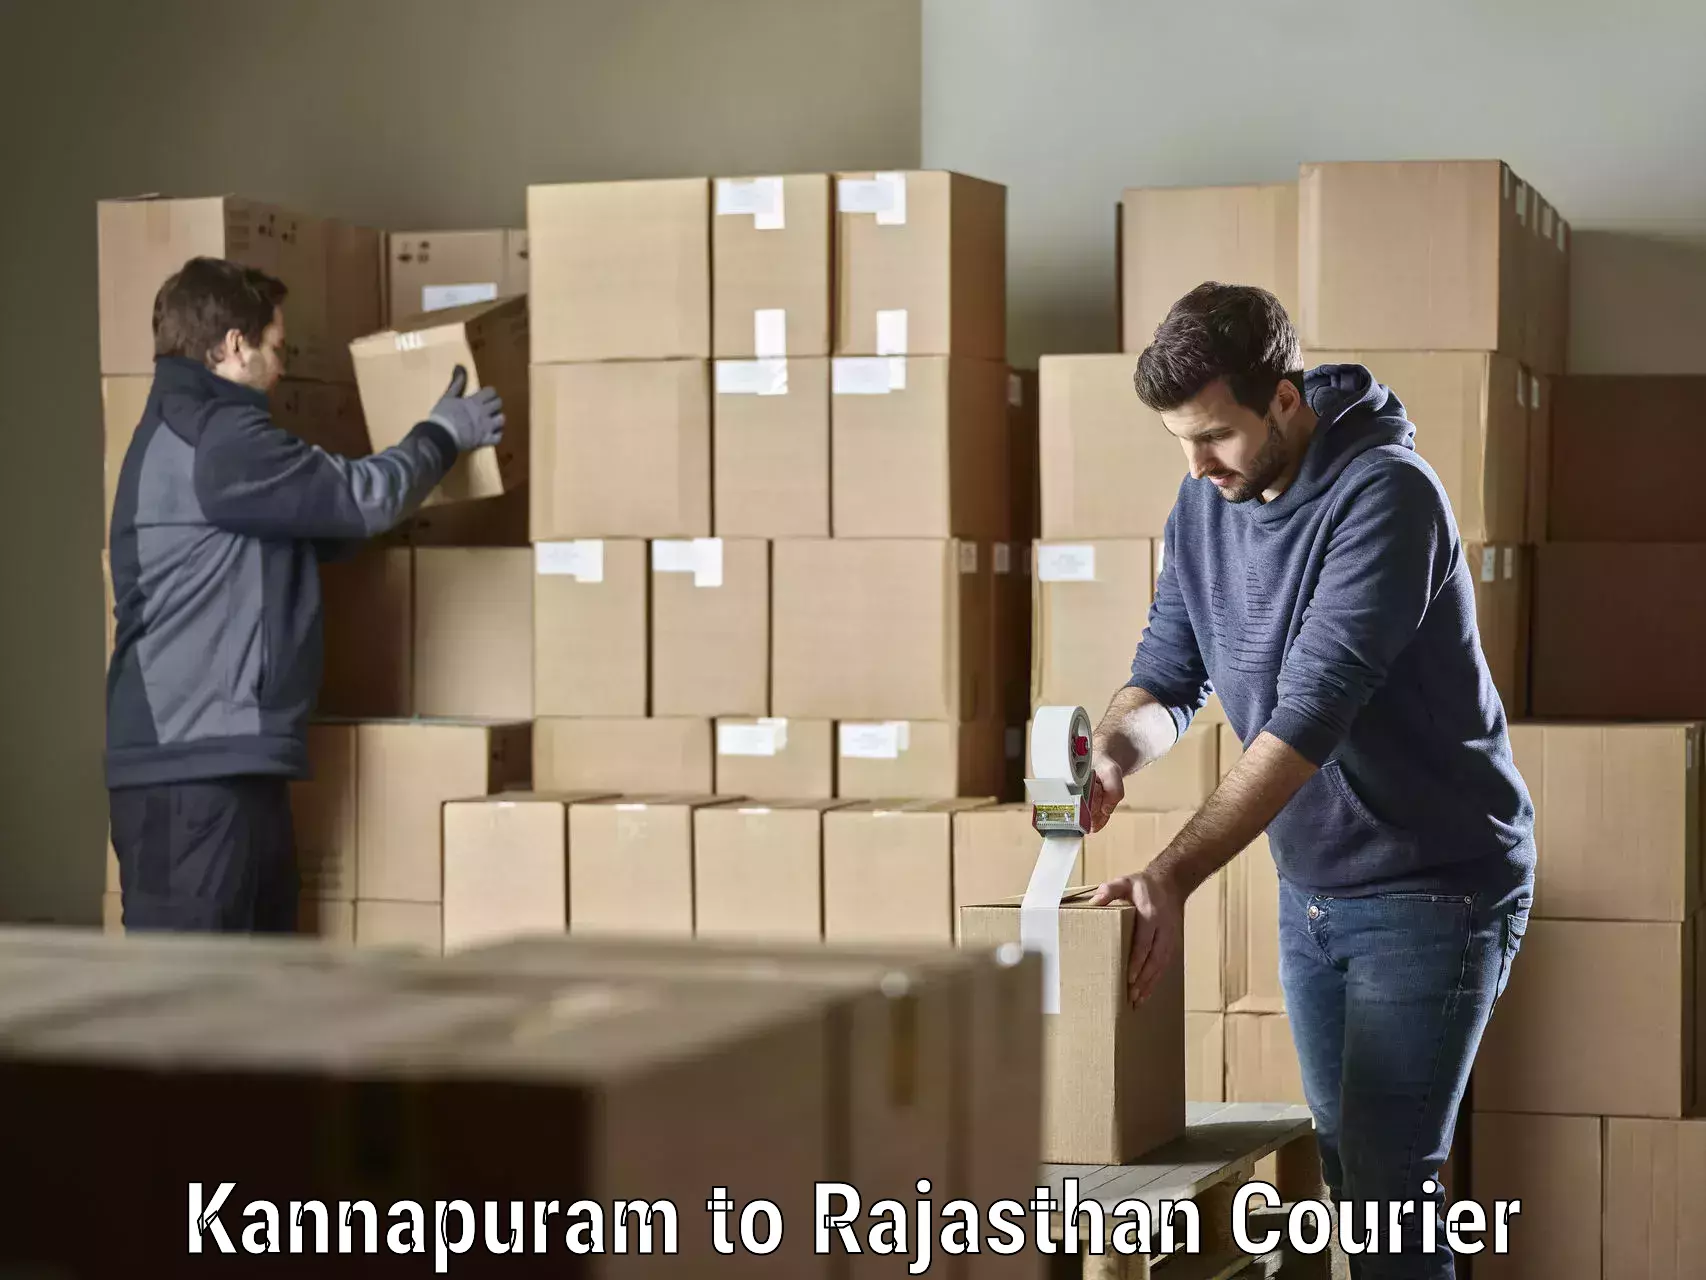 High-priority parcel service Kannapuram to Pilani